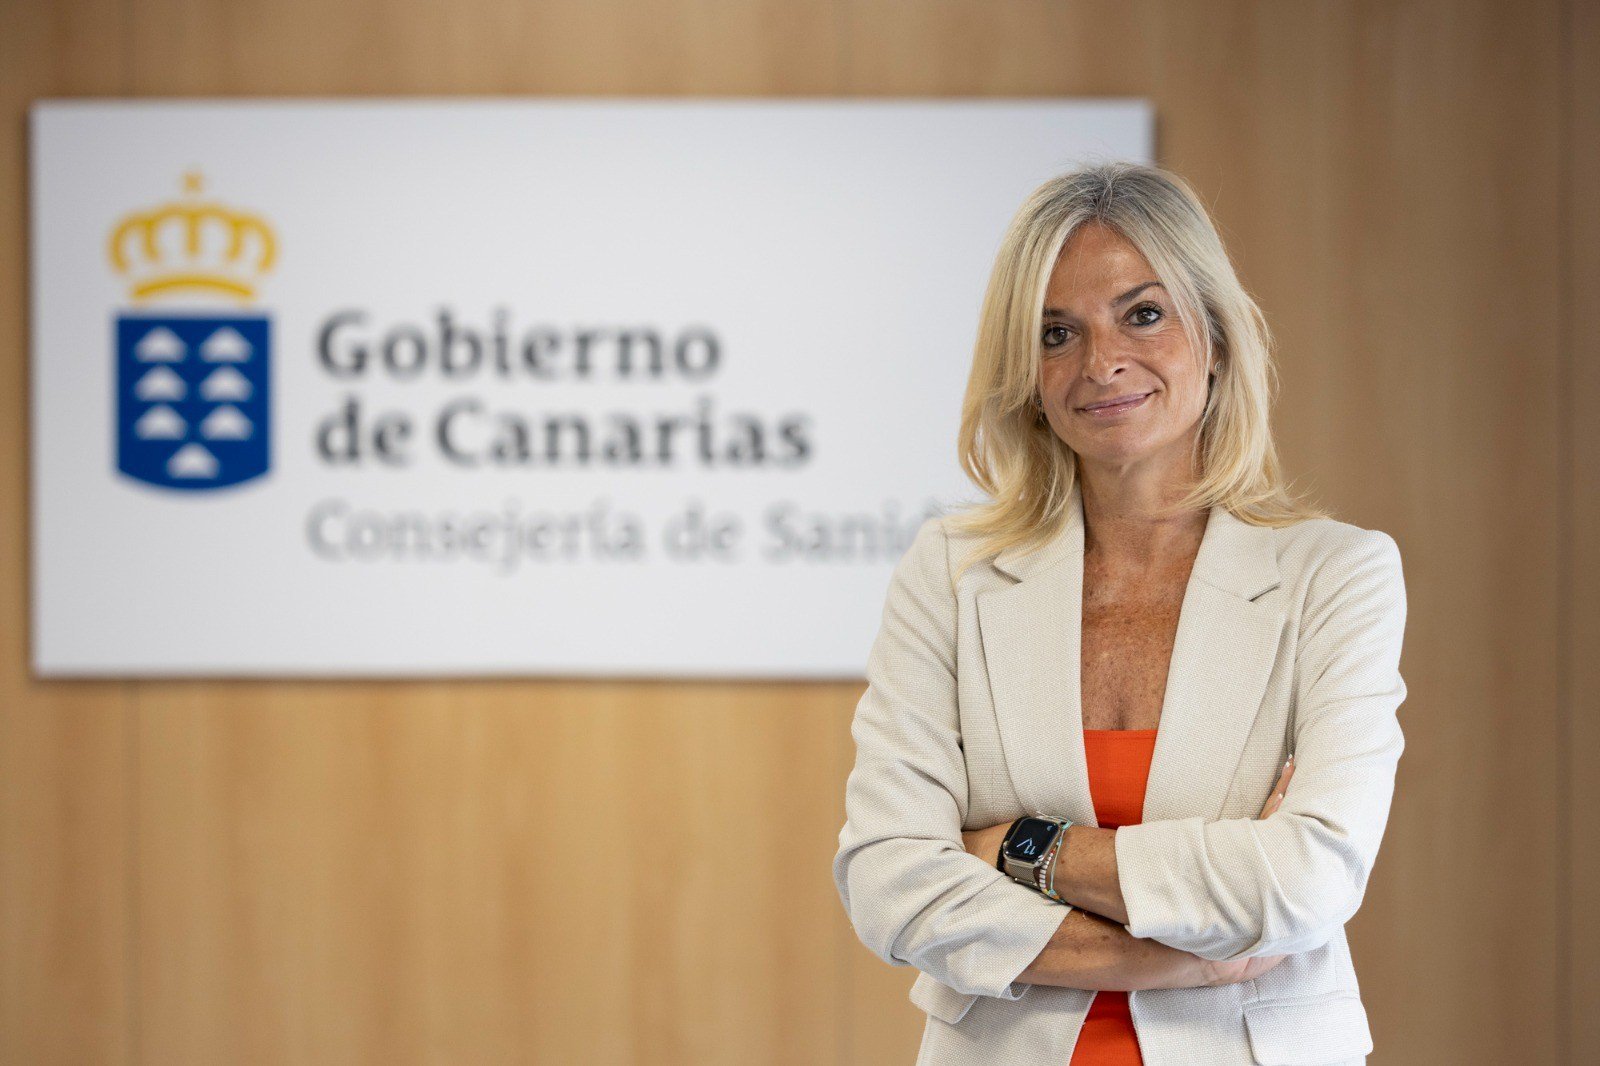 La consejera de Sanidad del Gobierno de Canarias, Esther Monzón. Foto: Gobierno de Canarias.